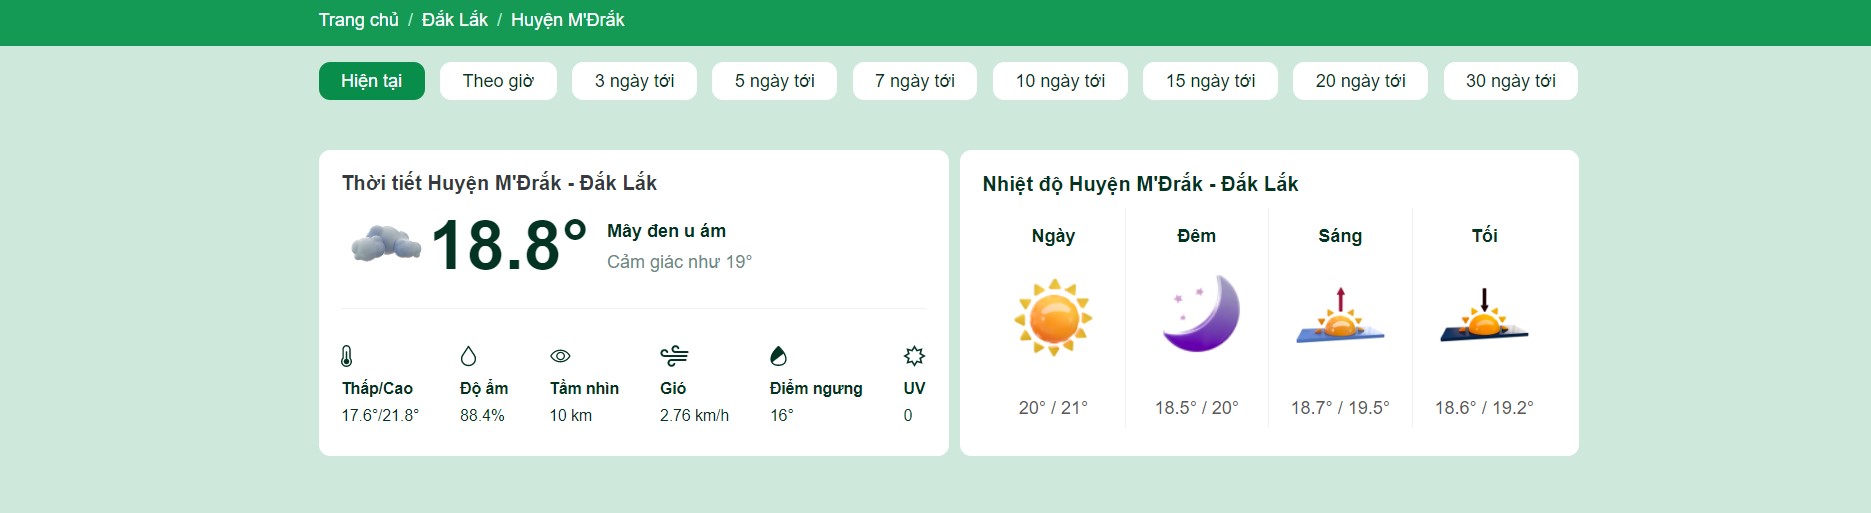 thời tiết huyện M'Đrắk 10 ngày tới